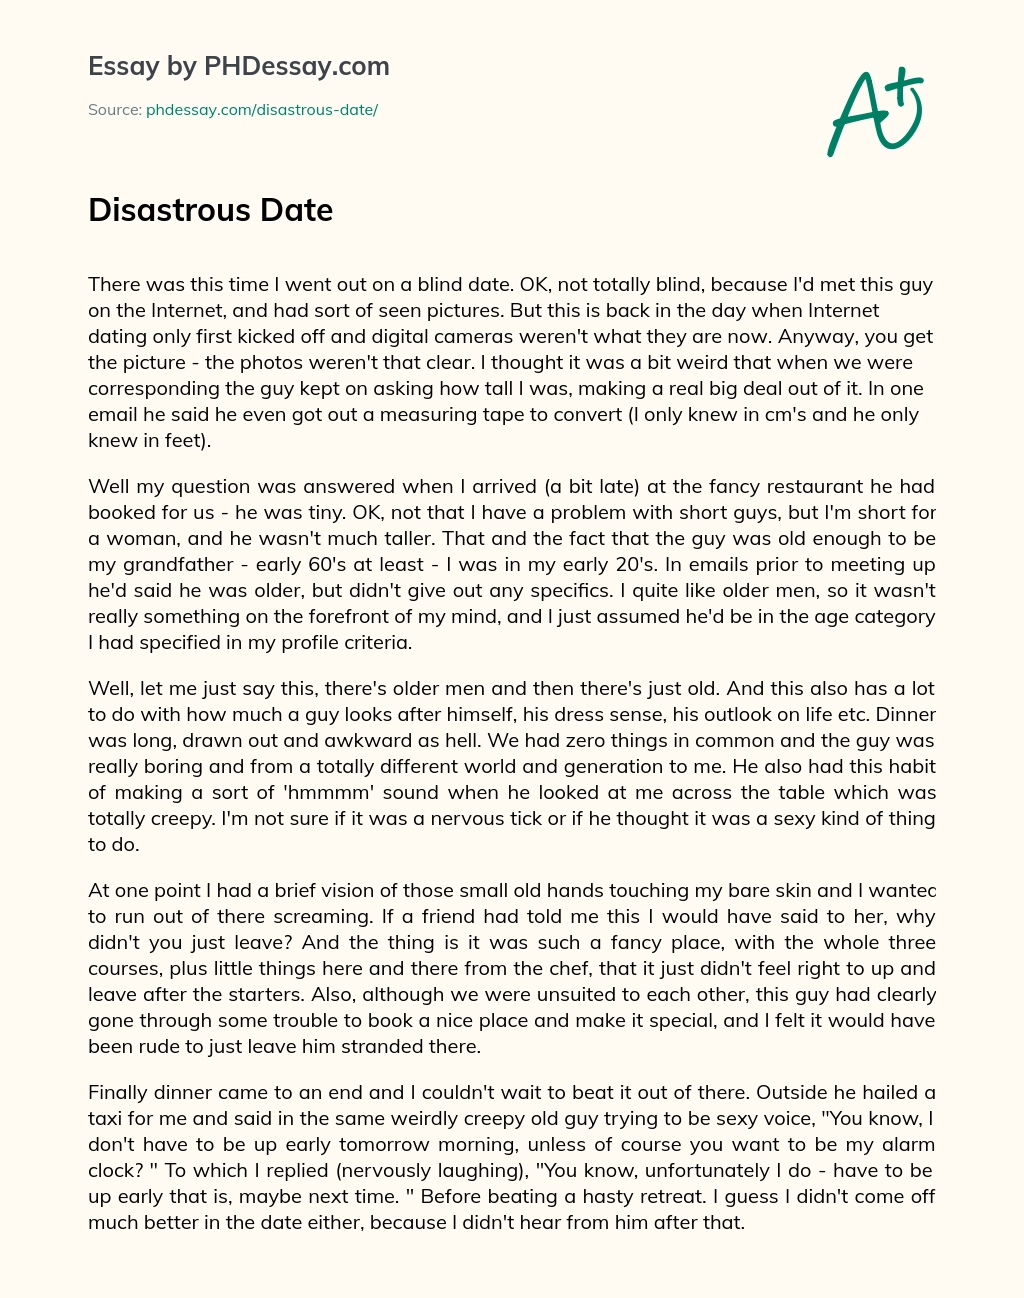 Disastrous Date essay